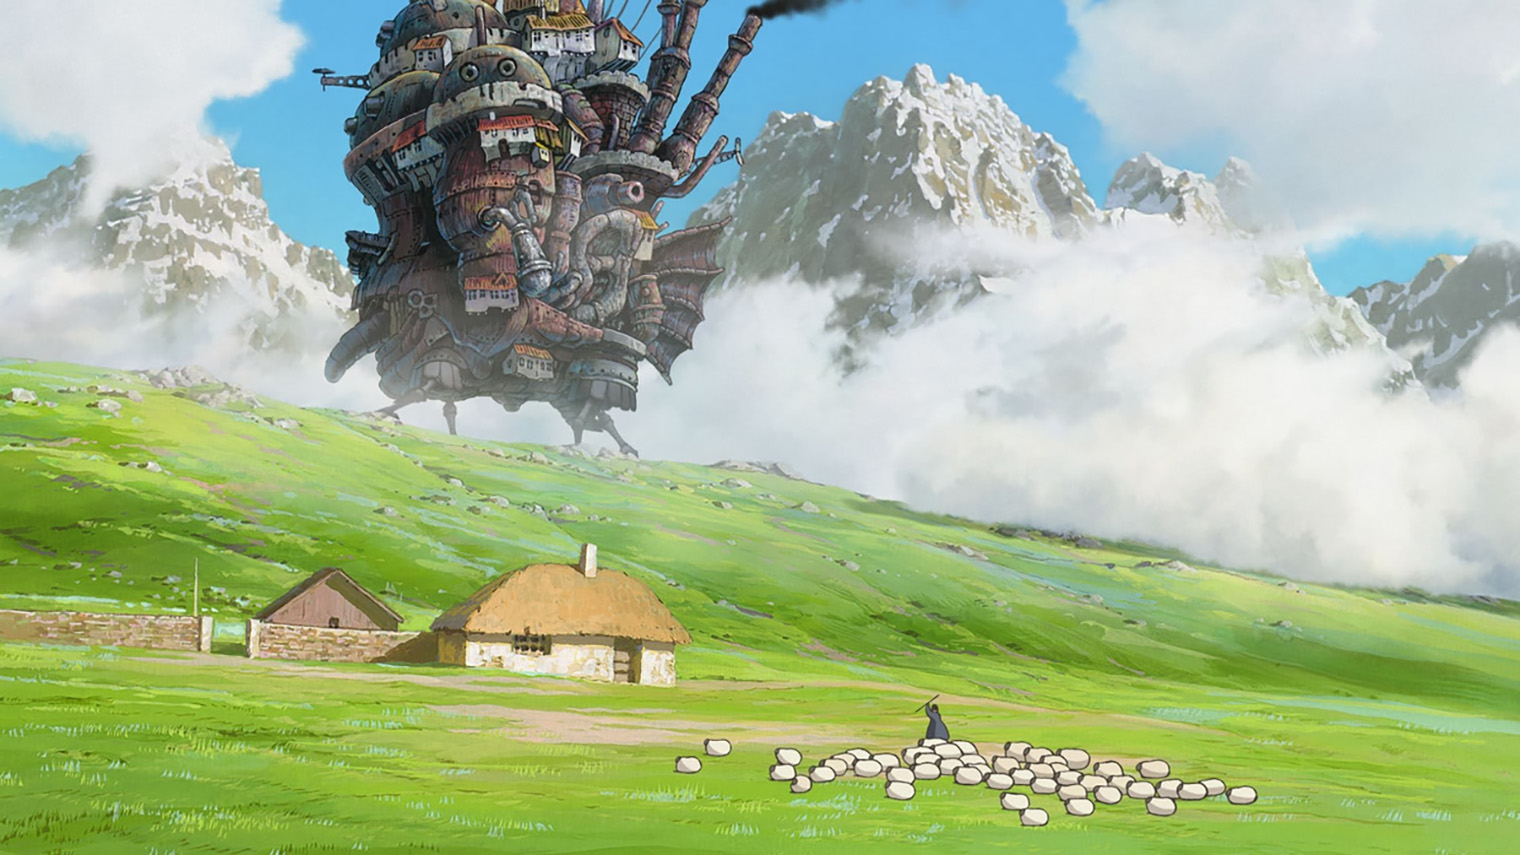 Ходячий замок — один из самых известных символов студии Ghibli. Кадр: Studio Ghibli